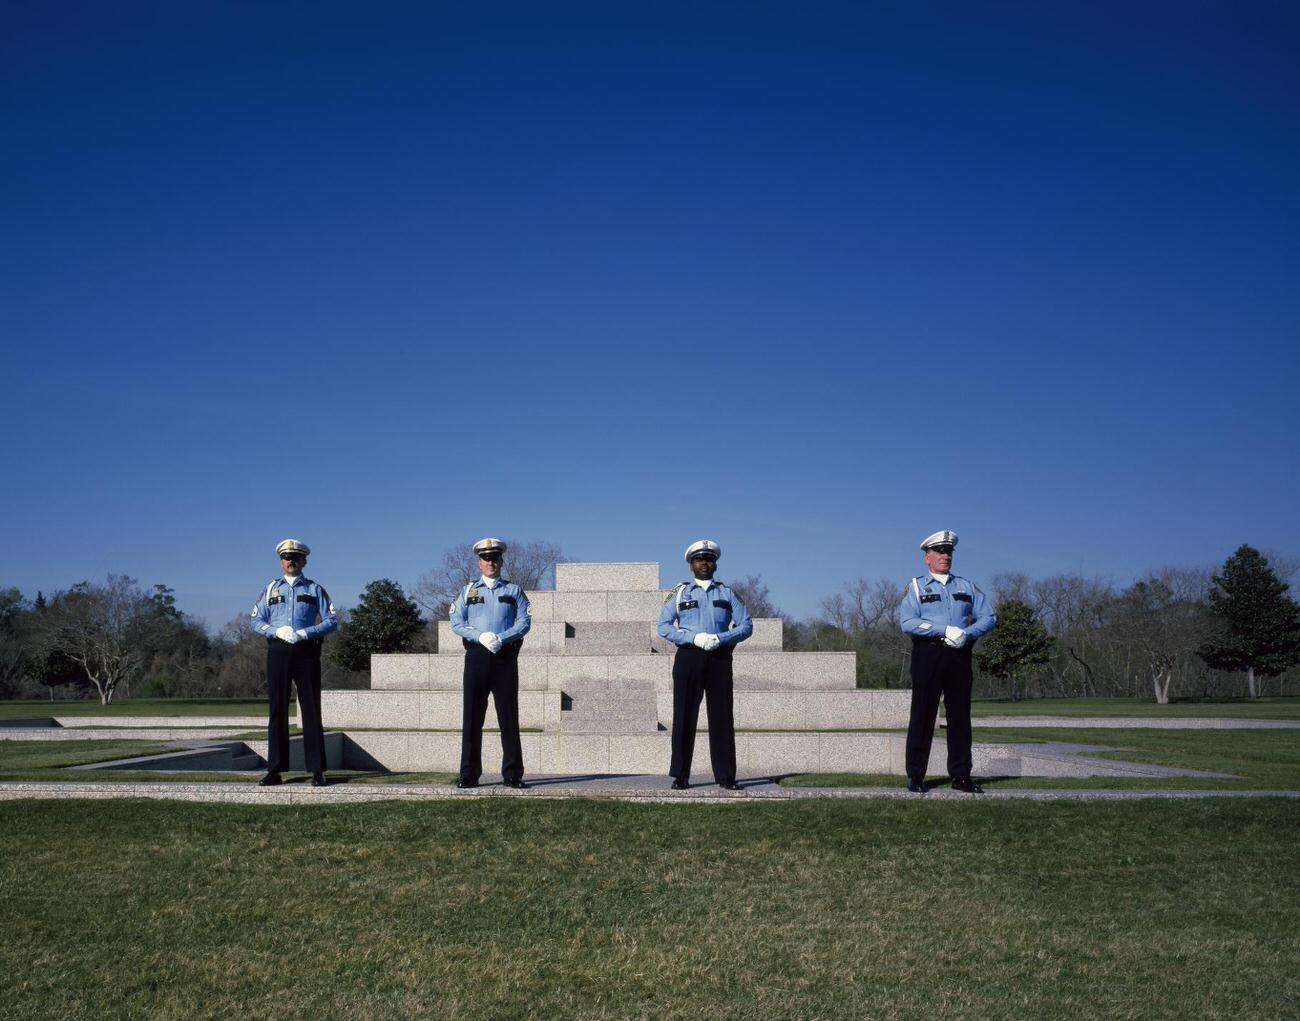 Police memorial in Houston, Texas, 1990s